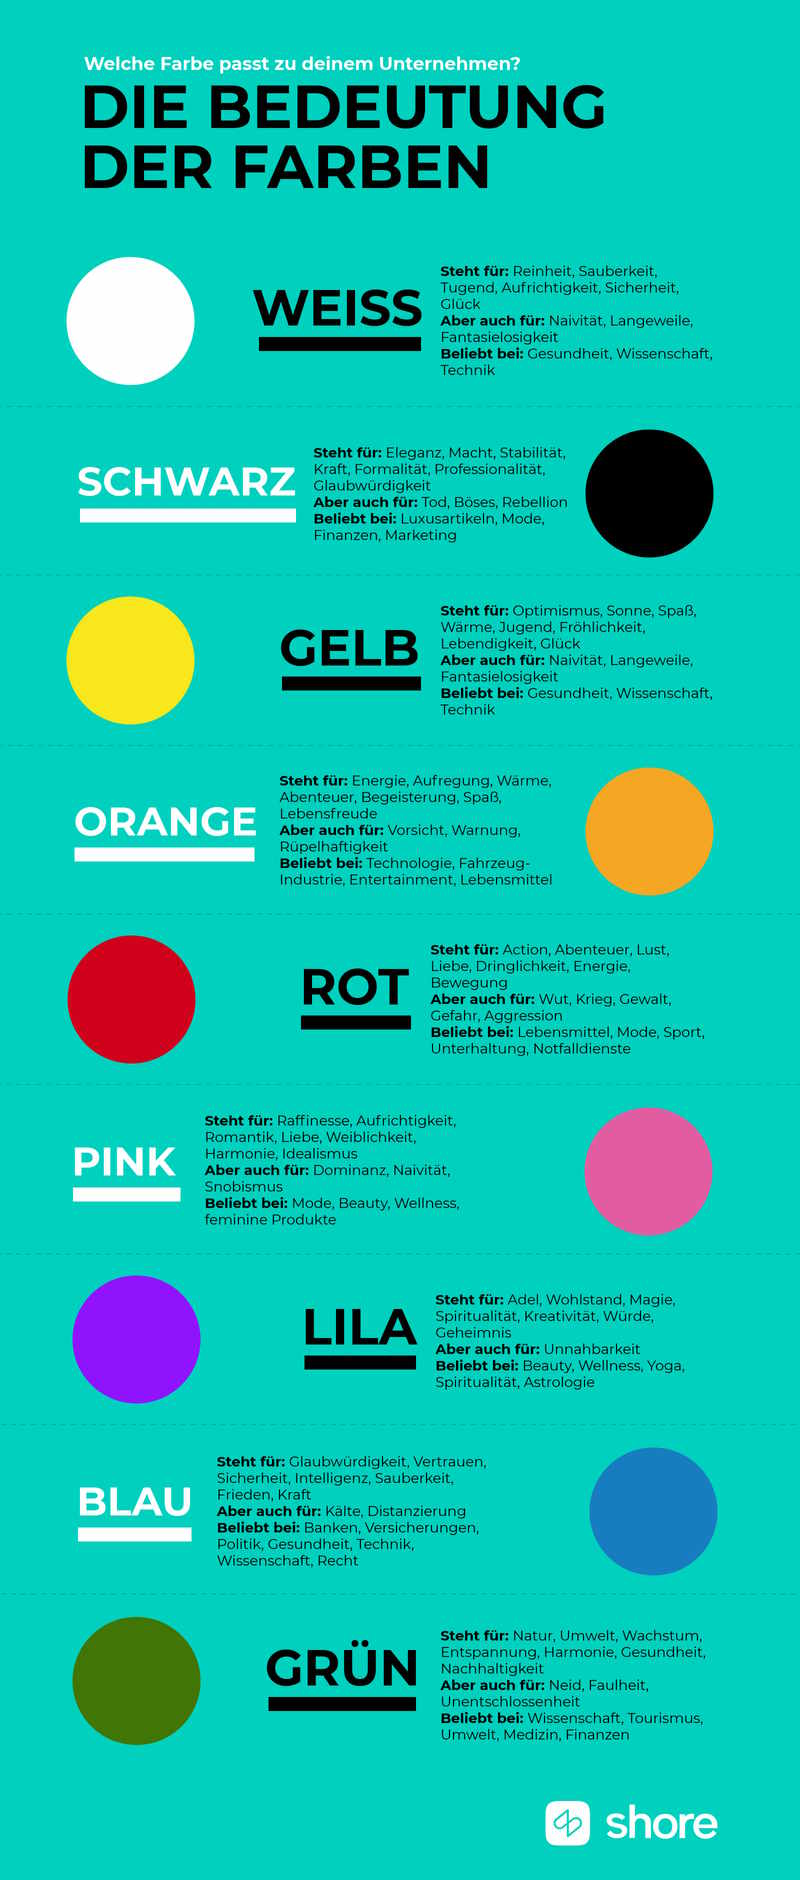 Farben und ihre Bedeutung einfach dargestellt